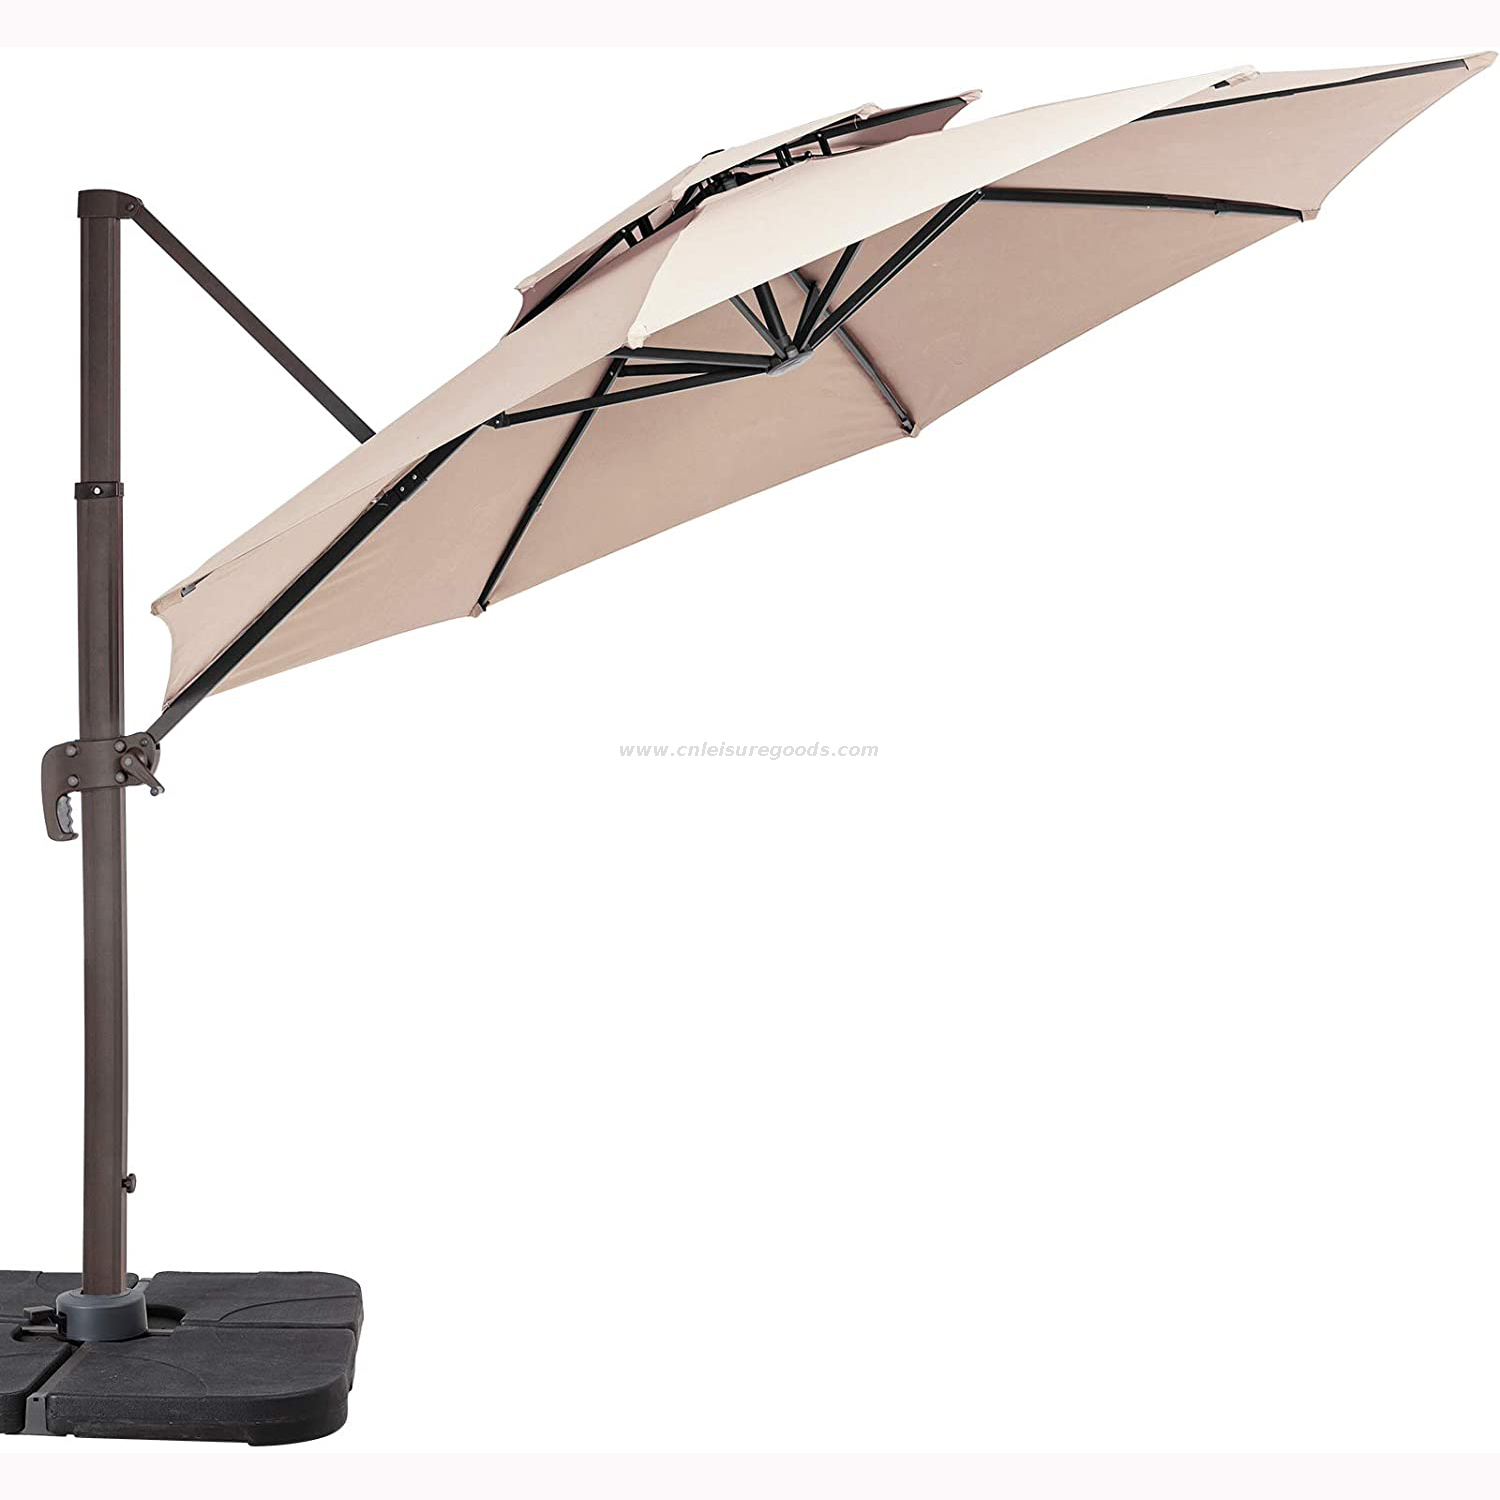 Uplion Outdoor Aluminium Roma Umbrella Double Layer Cantilever Parasol Garden Restaurant Umbrella